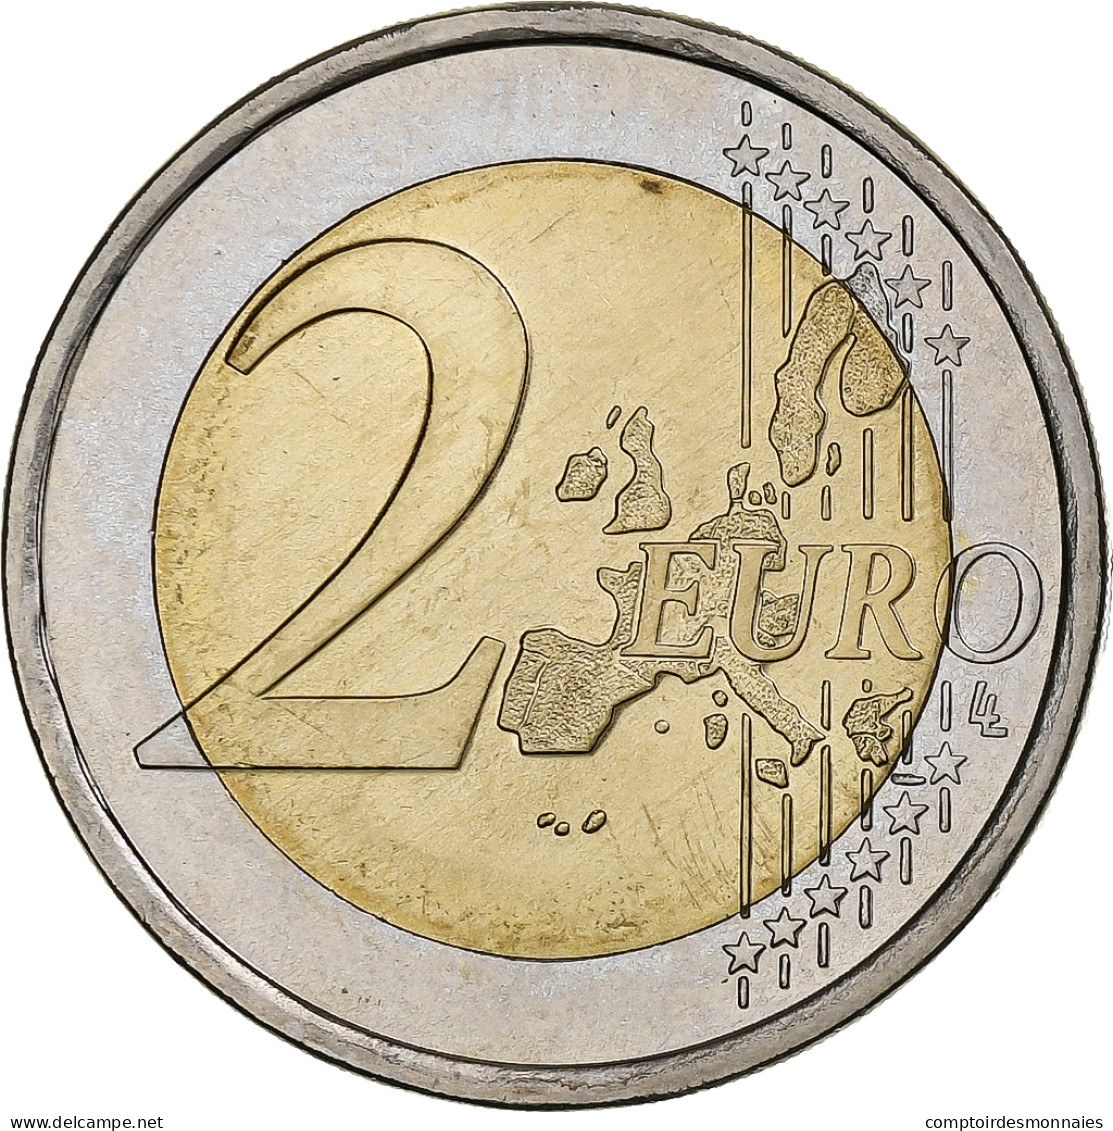 Finlande, 2 Euro, 2005, Vantaa, Bimétallique, SUP, KM:119 - Finland